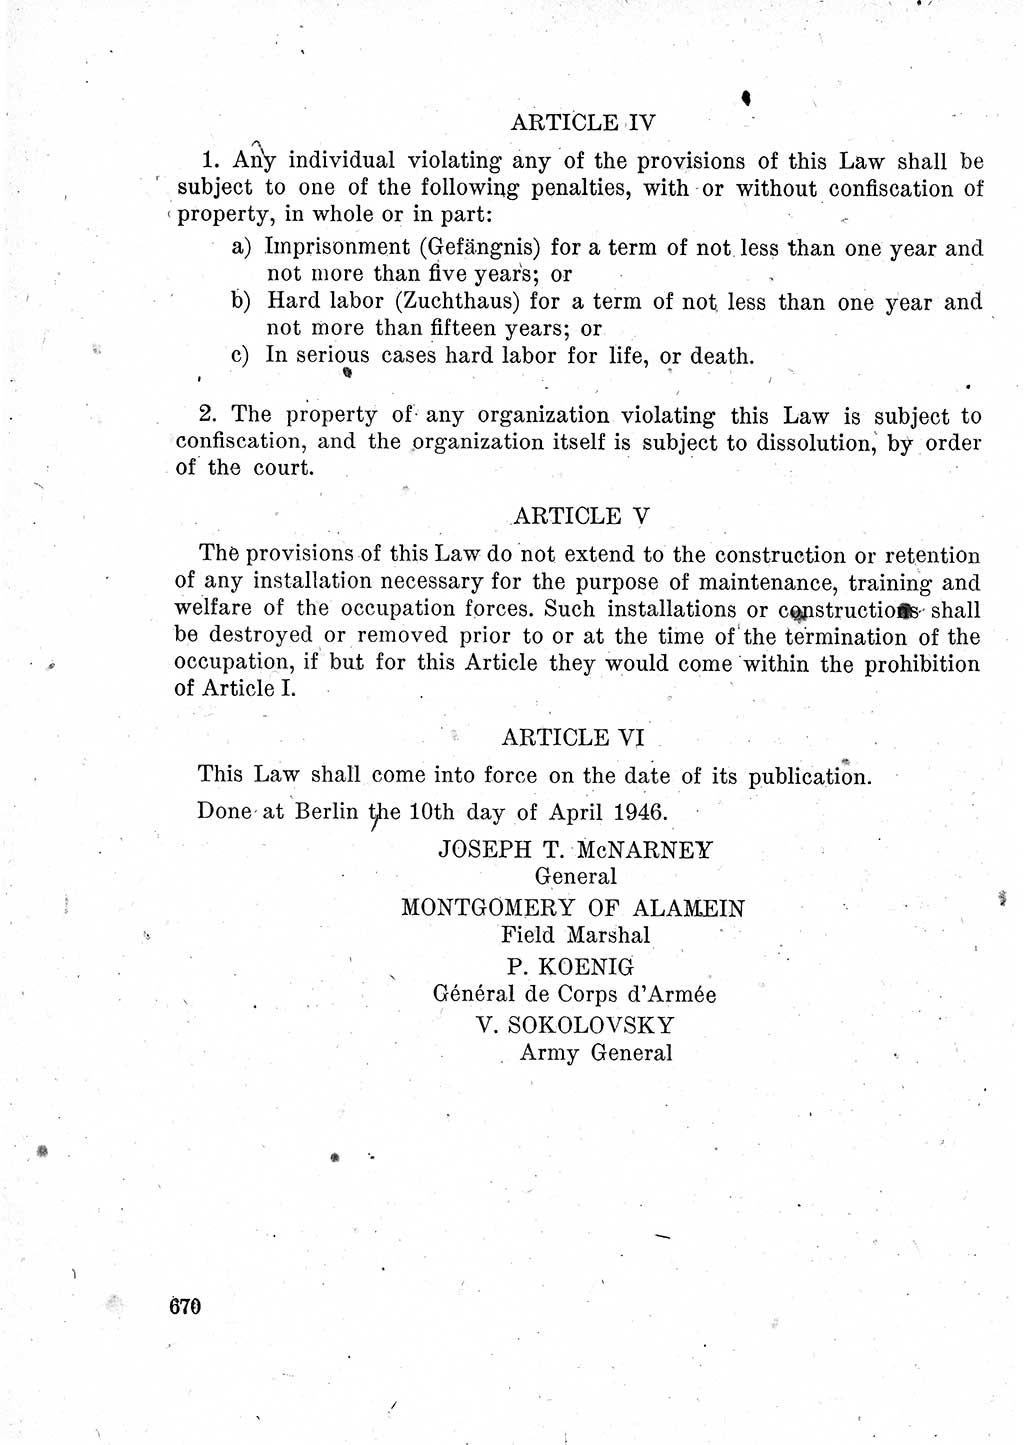 Das Recht der Besatzungsmacht (Deutschland), Proklamationen, Deklerationen, Verordnungen, Gesetze und Bekanntmachungen 1947, Seite 670 (R. Bes. Dtl. 1947, S. 670)